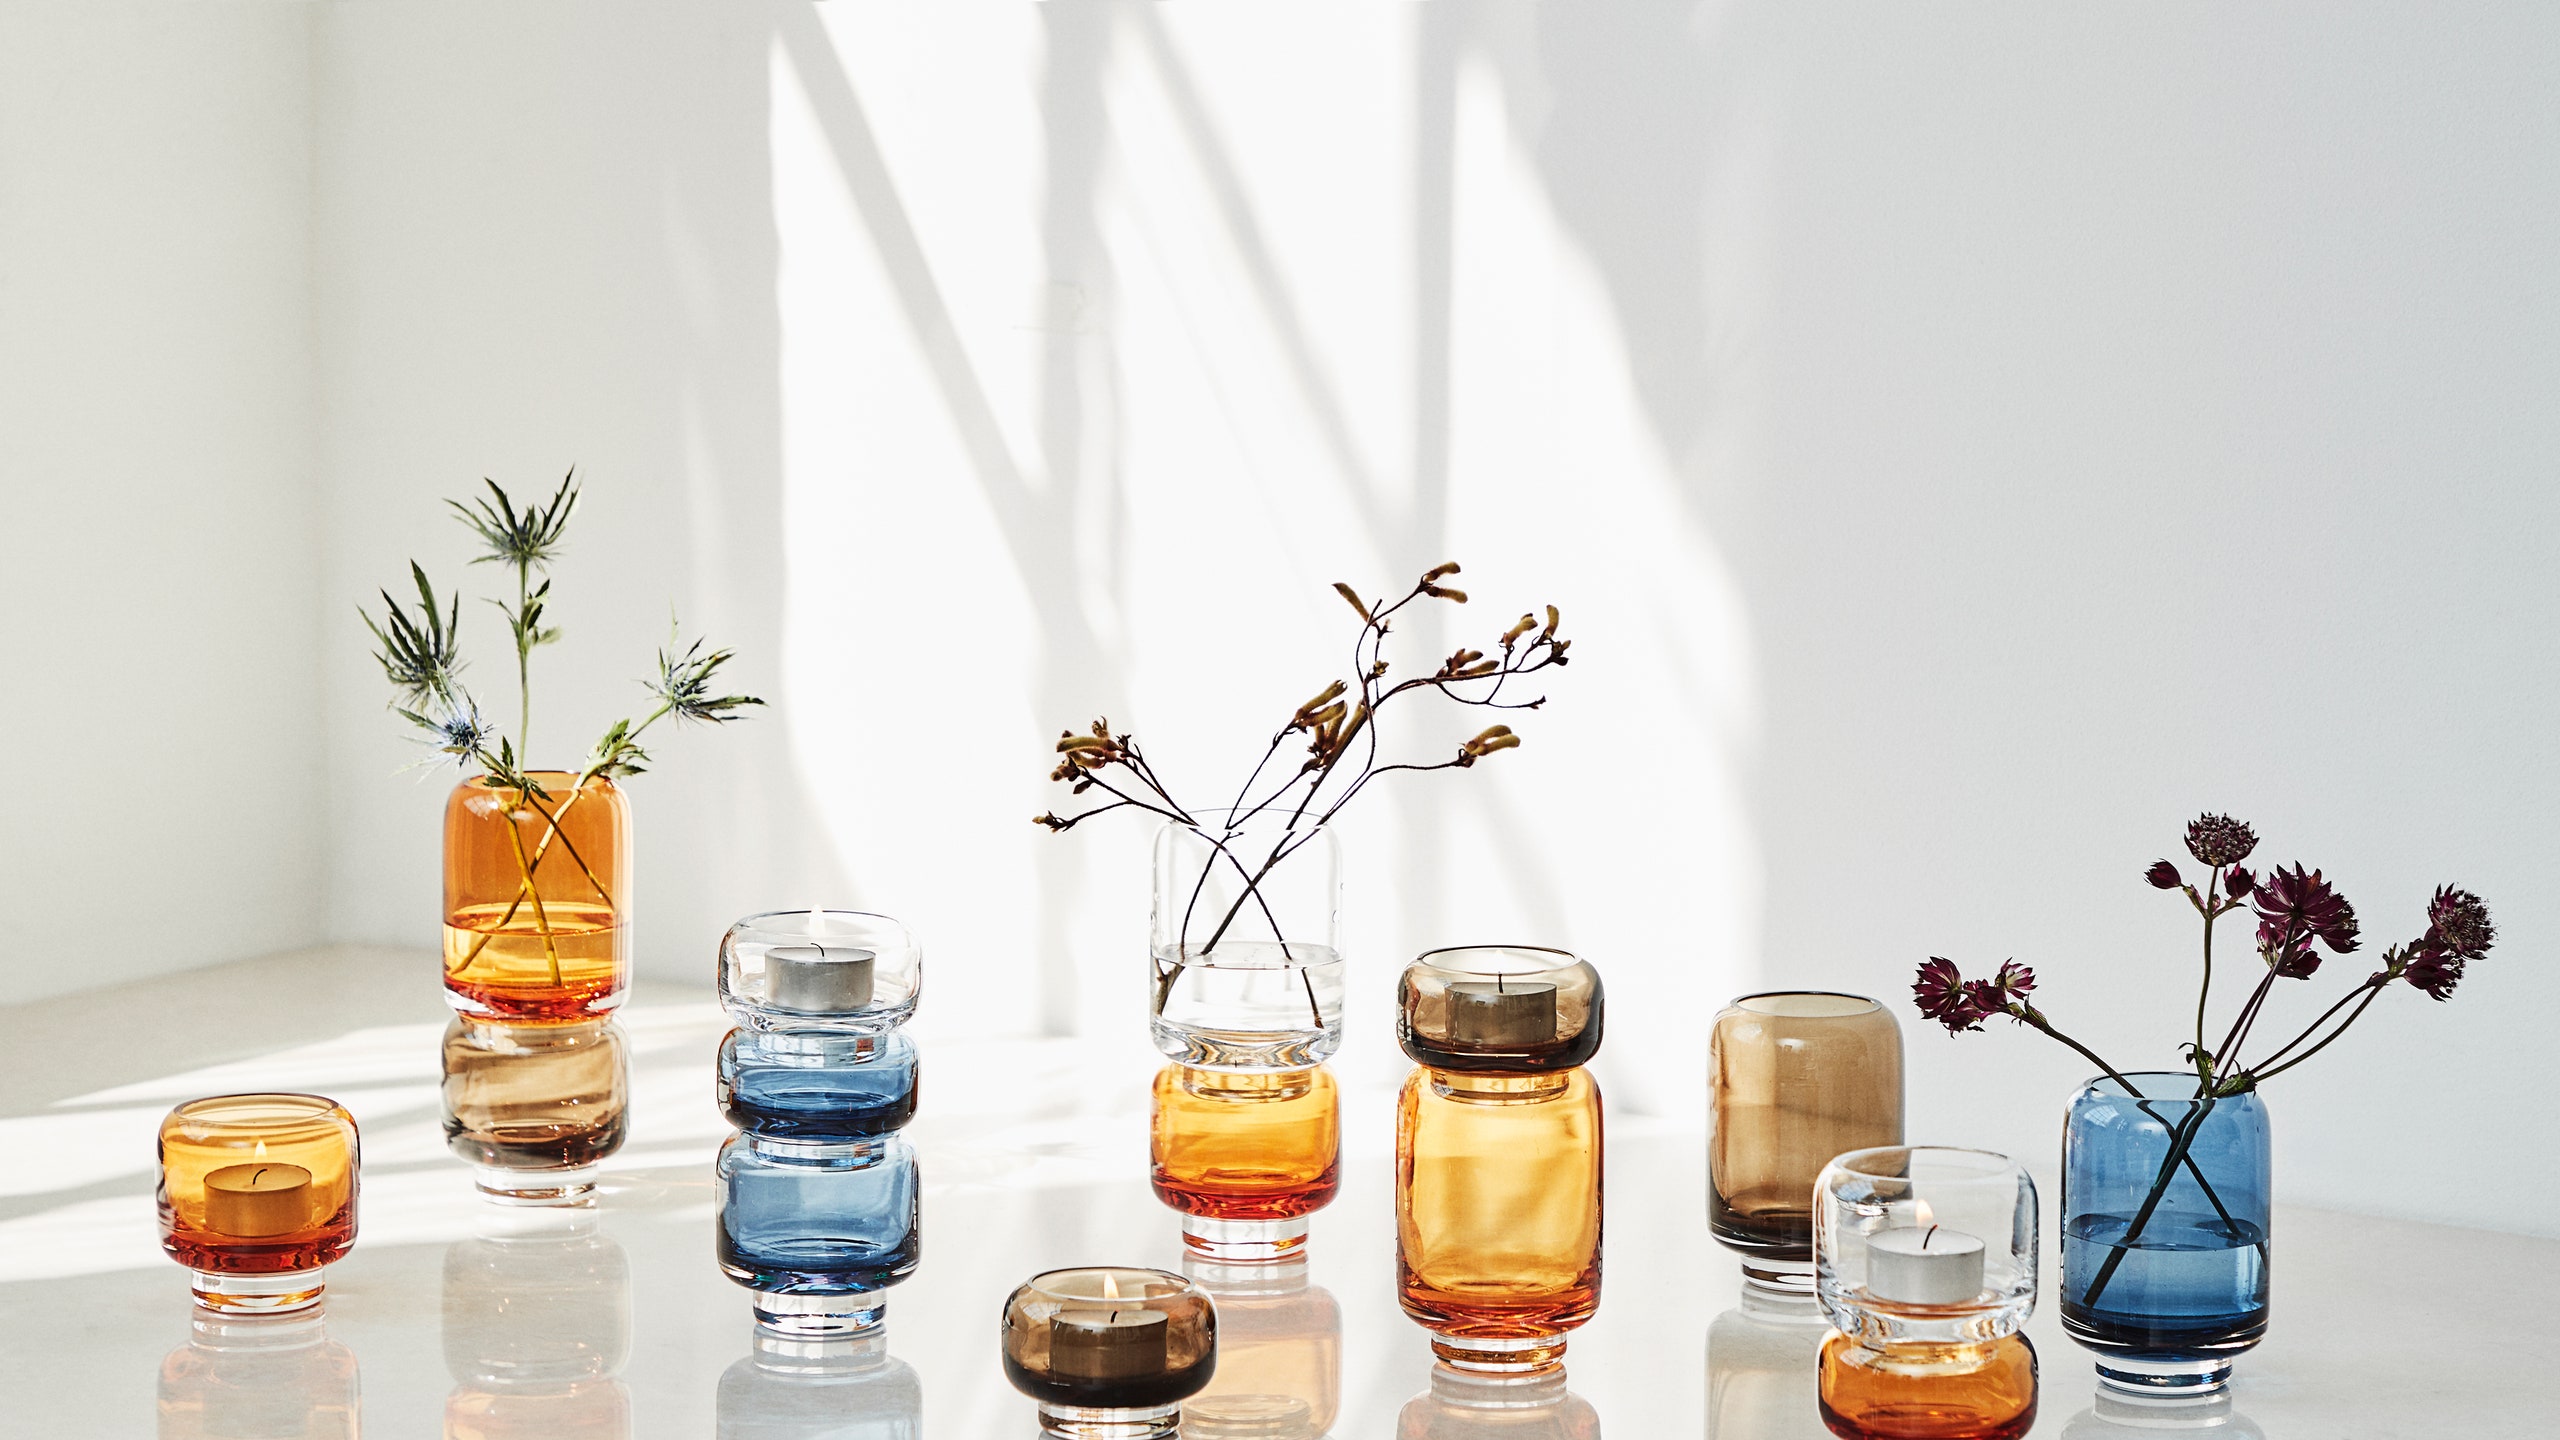 Новая коллекция ваз и подсвечников из дутого стекла от датской студии